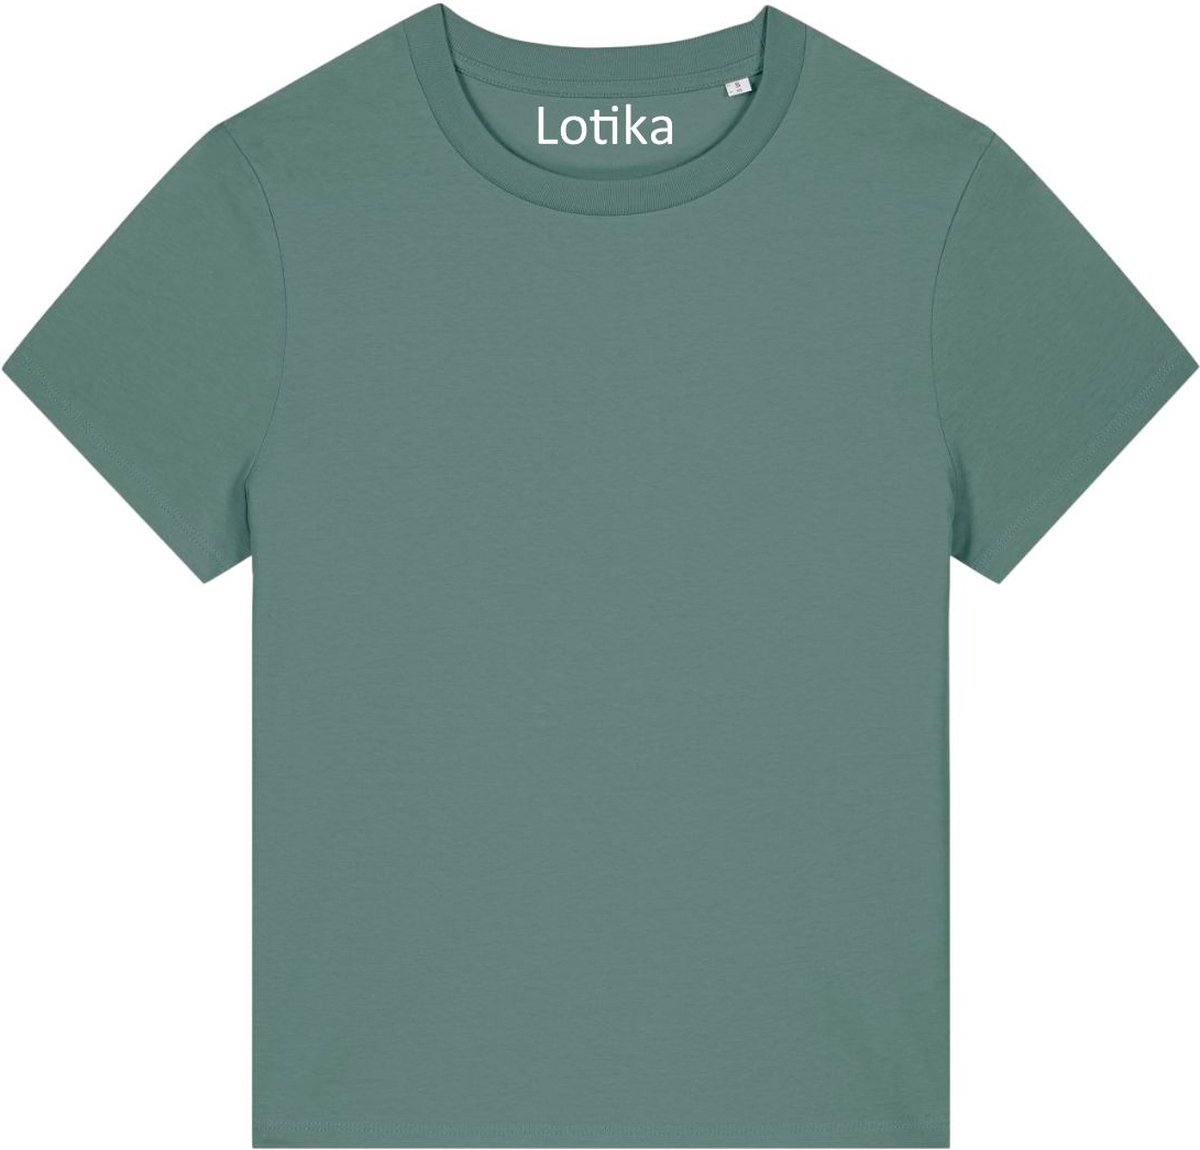 Lotika - Saar T-shirt dames biologisch katoen - green bay